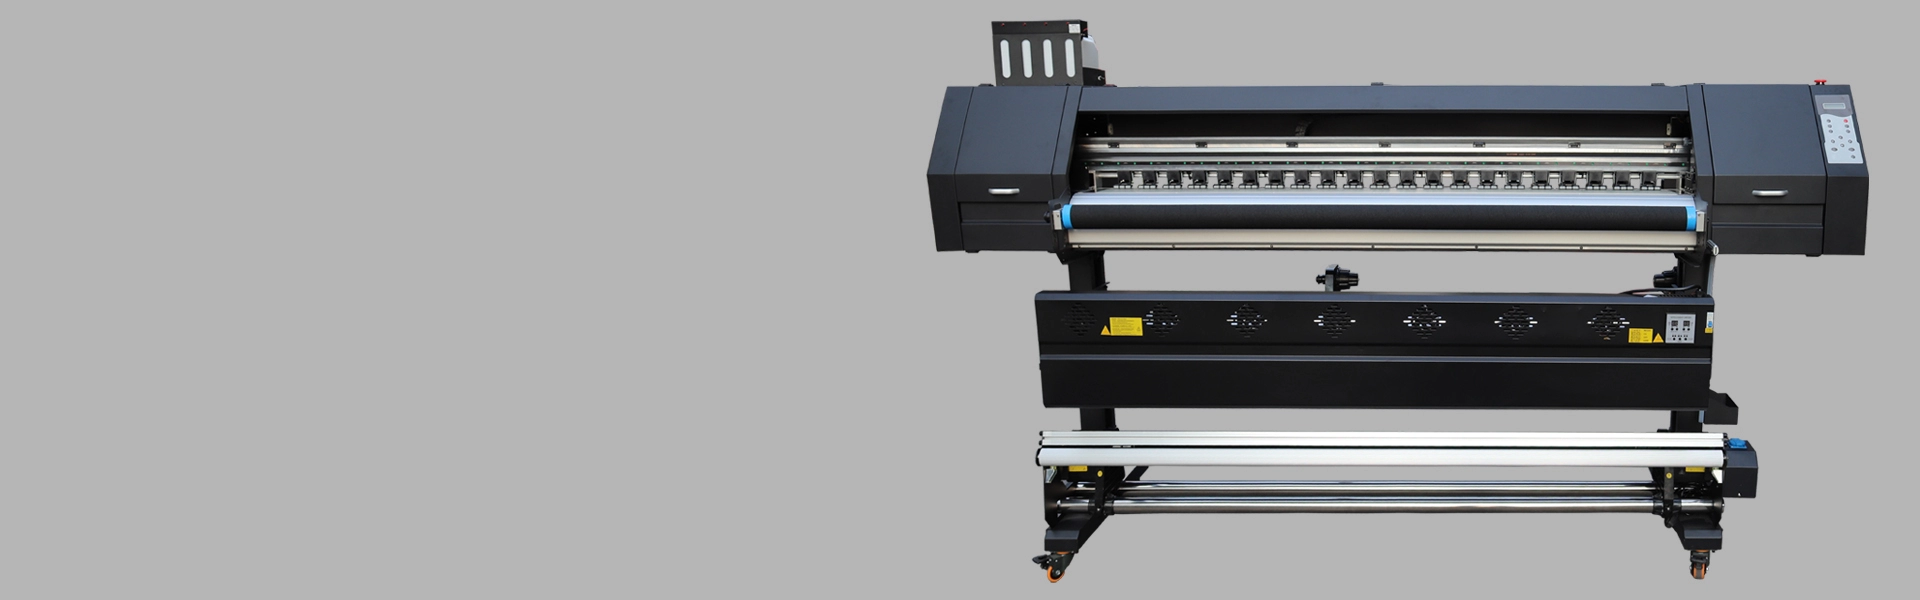 Impressora de sublimação OLLIN-E1804 I3200